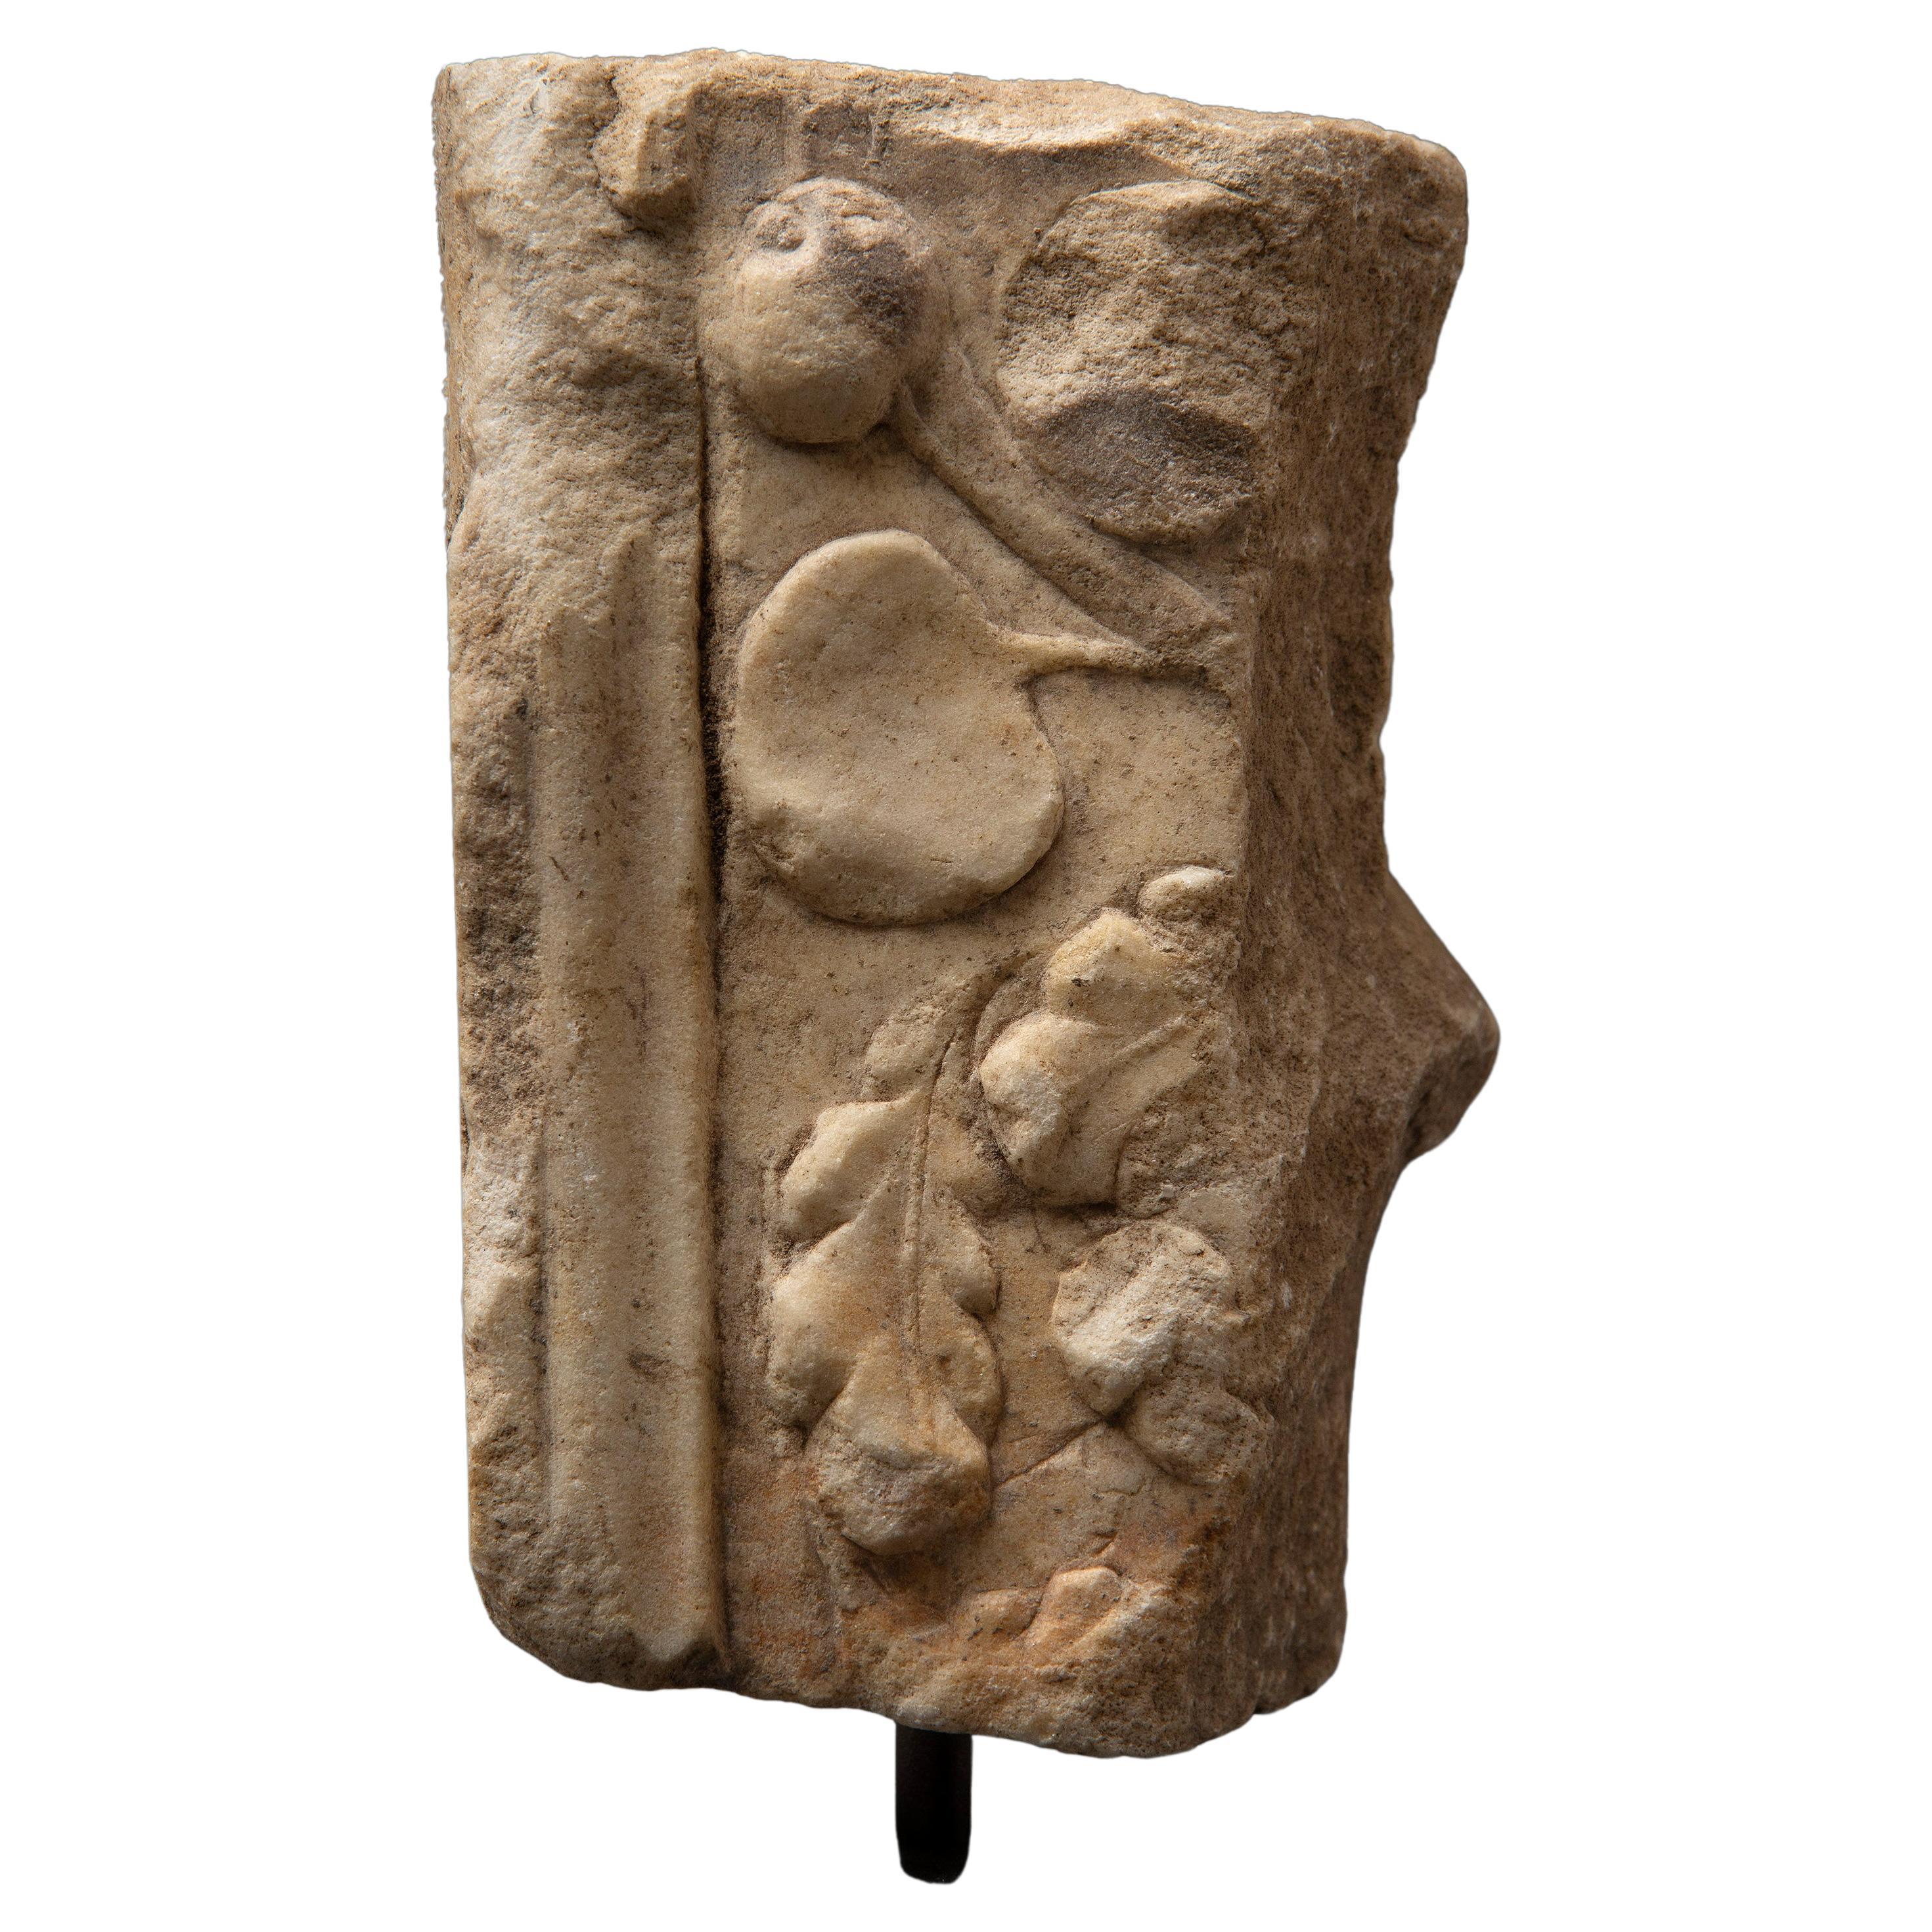 Décoration architecturale en marbre romain - 1er / 2e siècle après J.-C